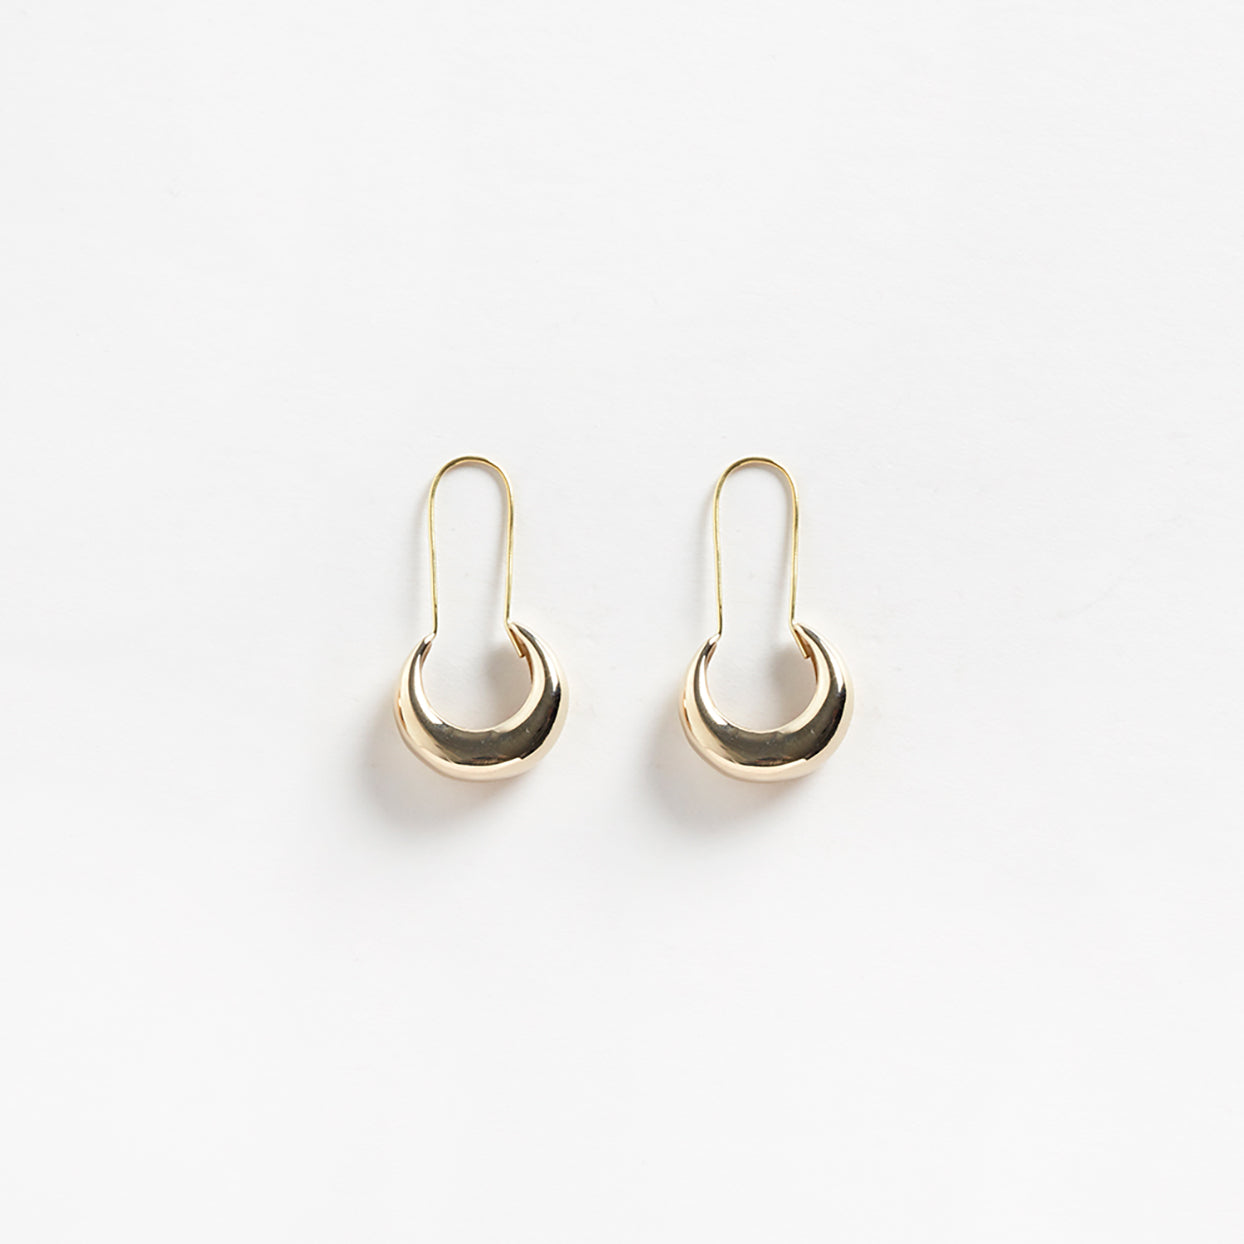 Lua earrings